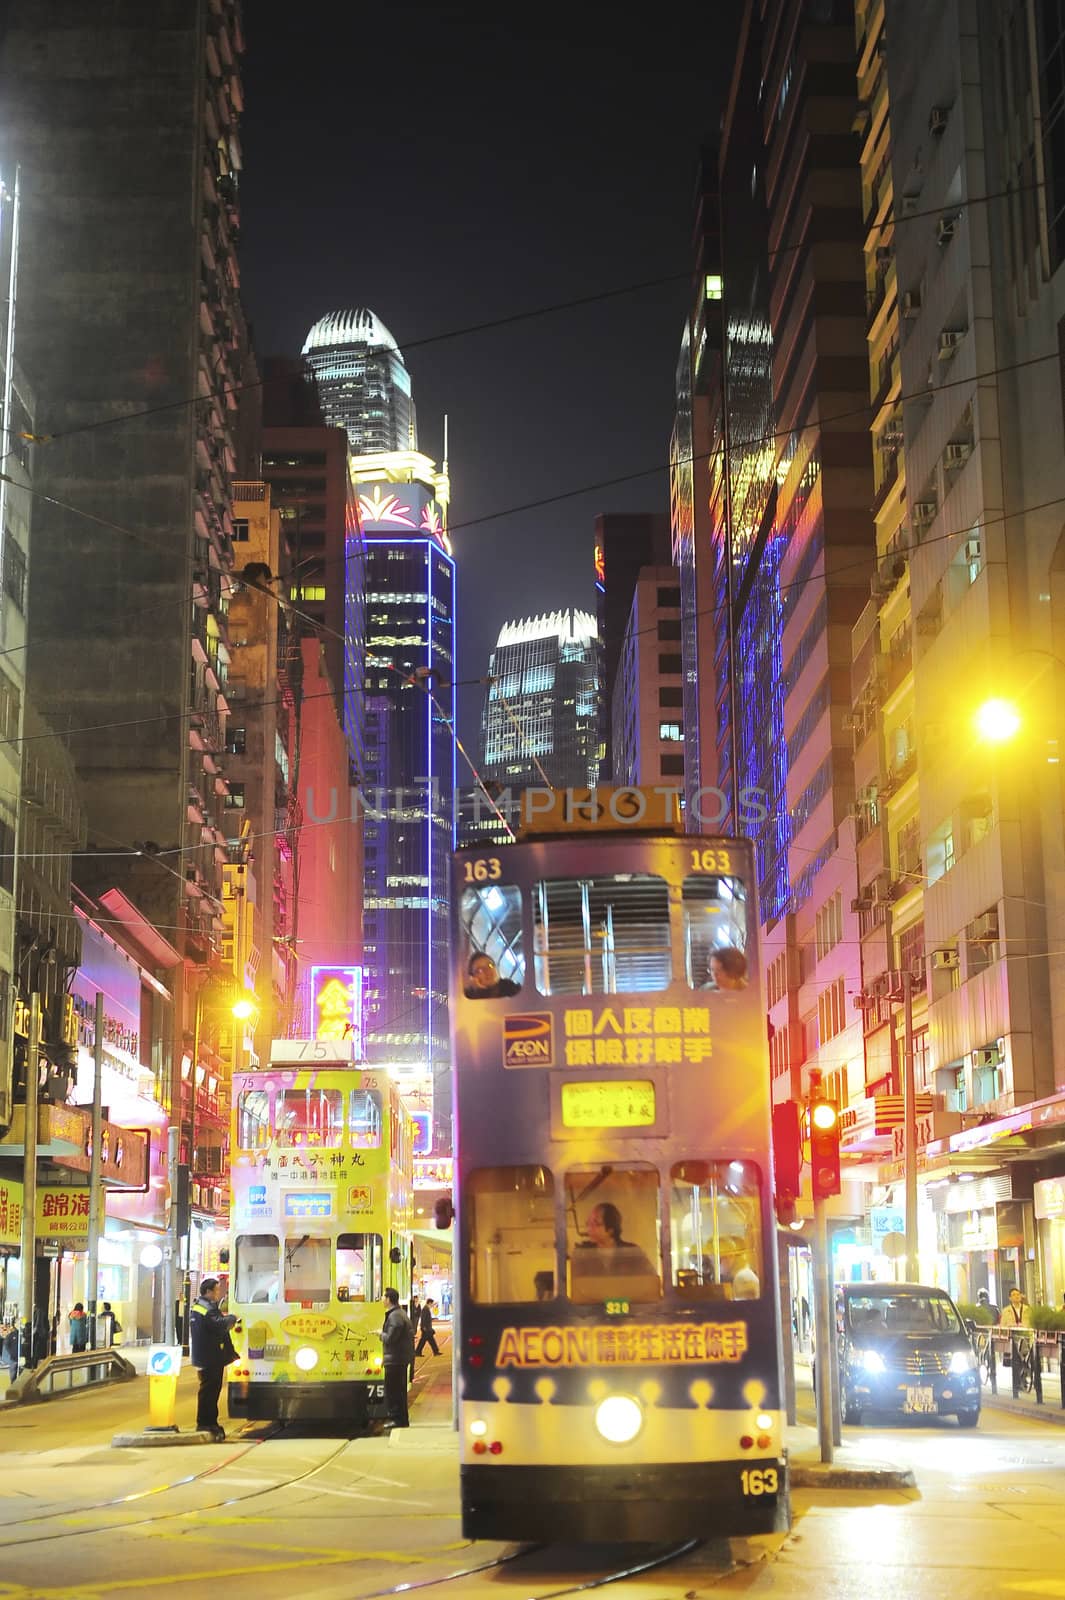 Hong Kong trams by joyfull